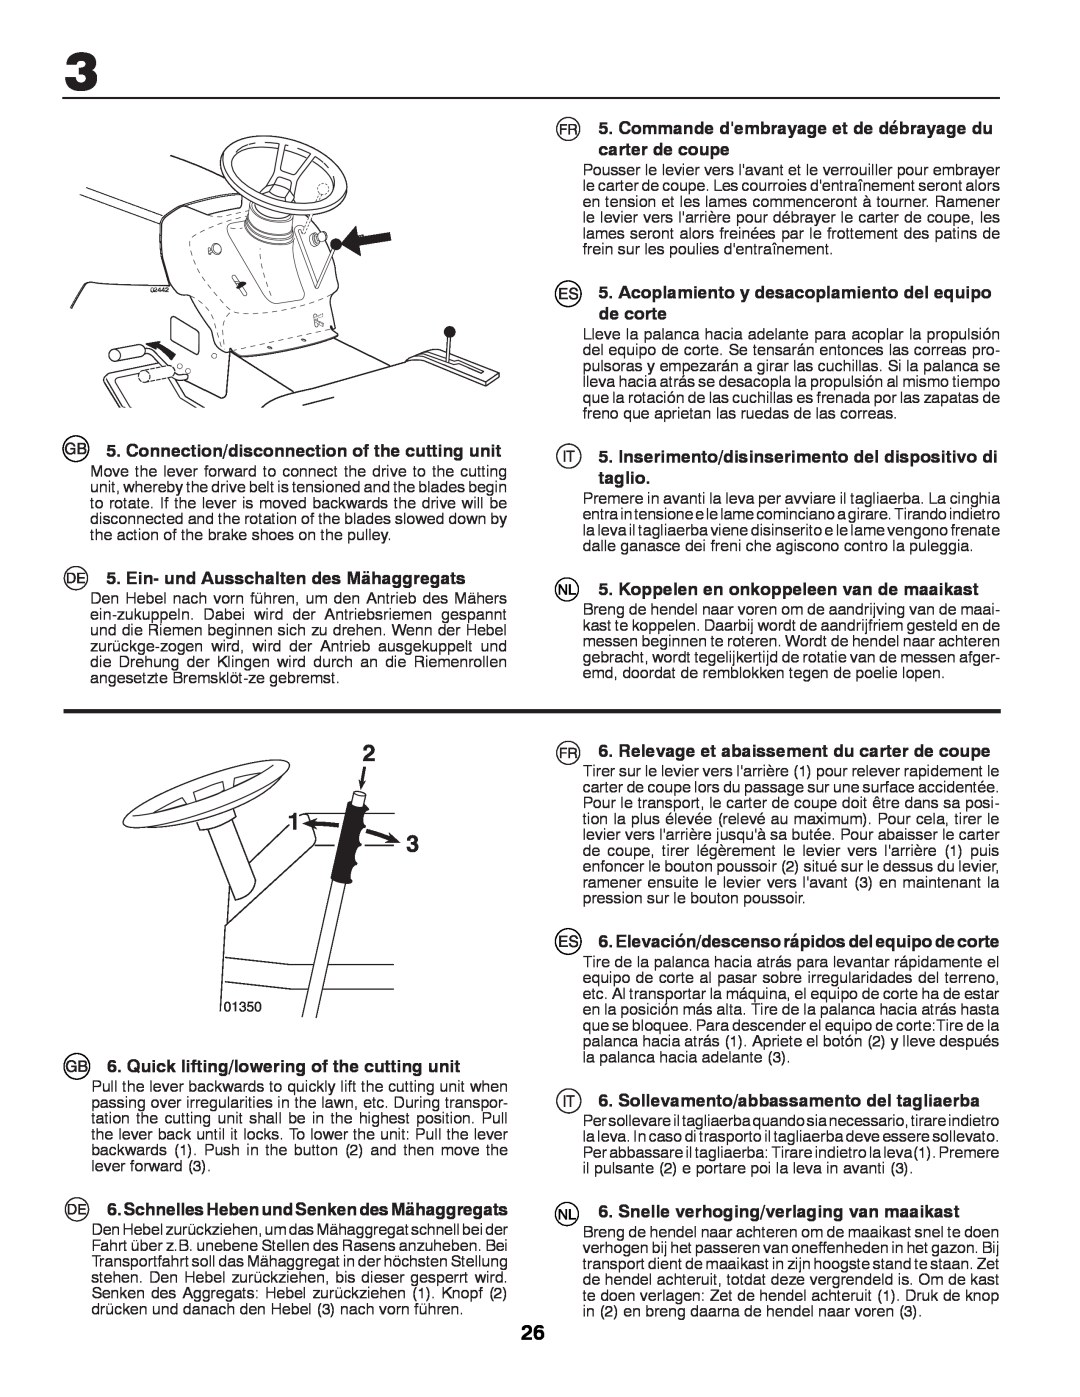 Husqvarna LT131 instruction manual Connection/disconnection of the cutting unit, Ein- und Ausschalten des Mähaggregats 